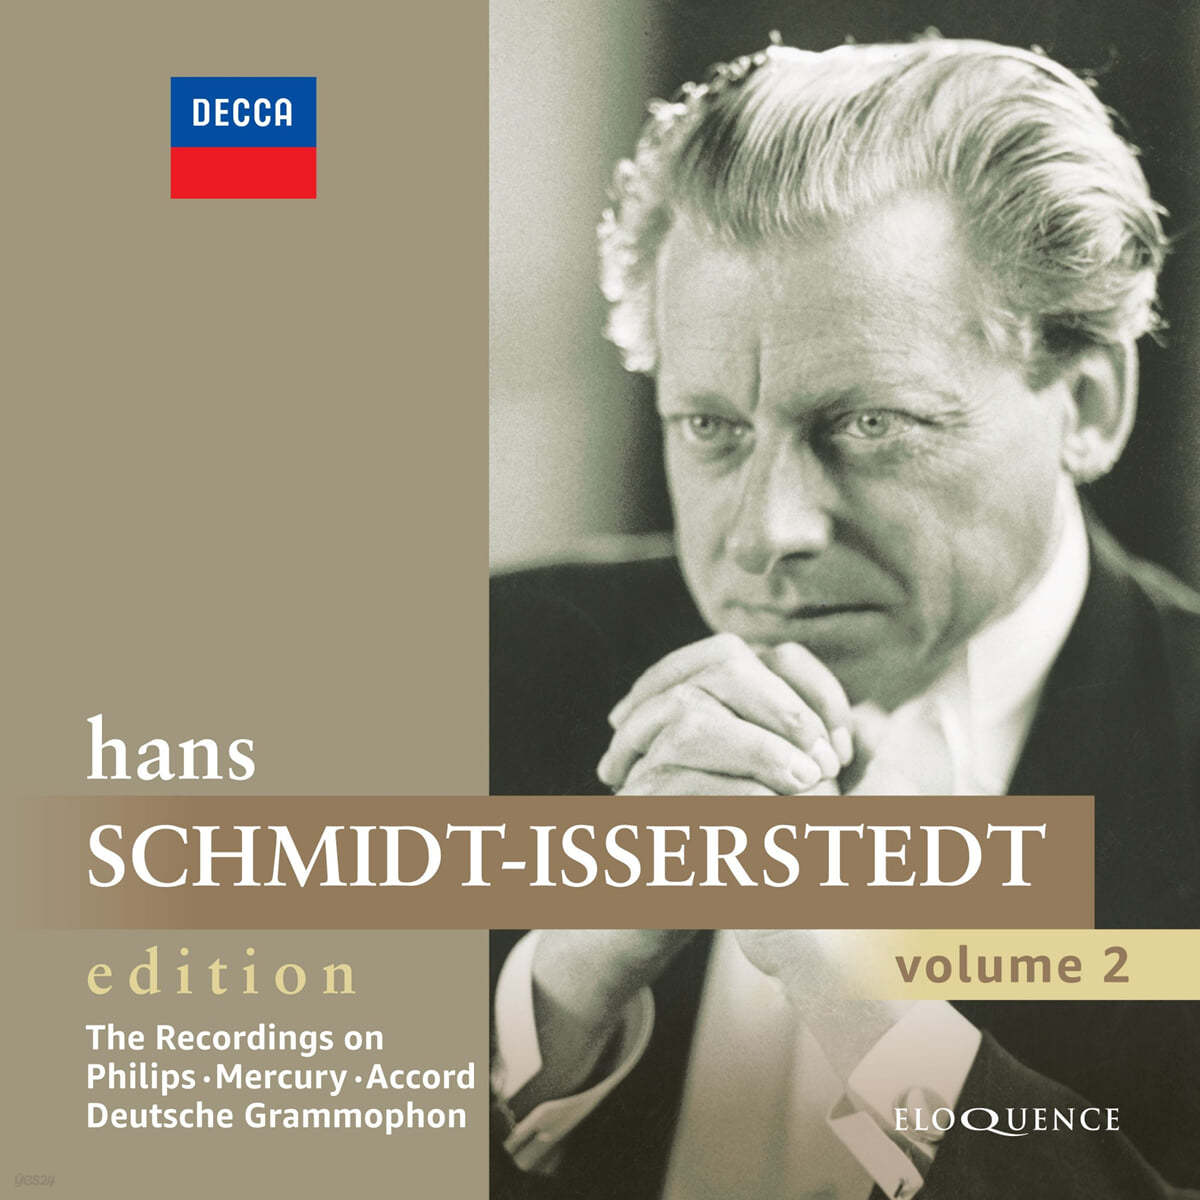 Hans Schmidt-Isserstedt 필립스, DG, 머큐리 레이블 녹음집 (The Recordings on Philips, Mercury, Accord, Deutsche Grammophon)